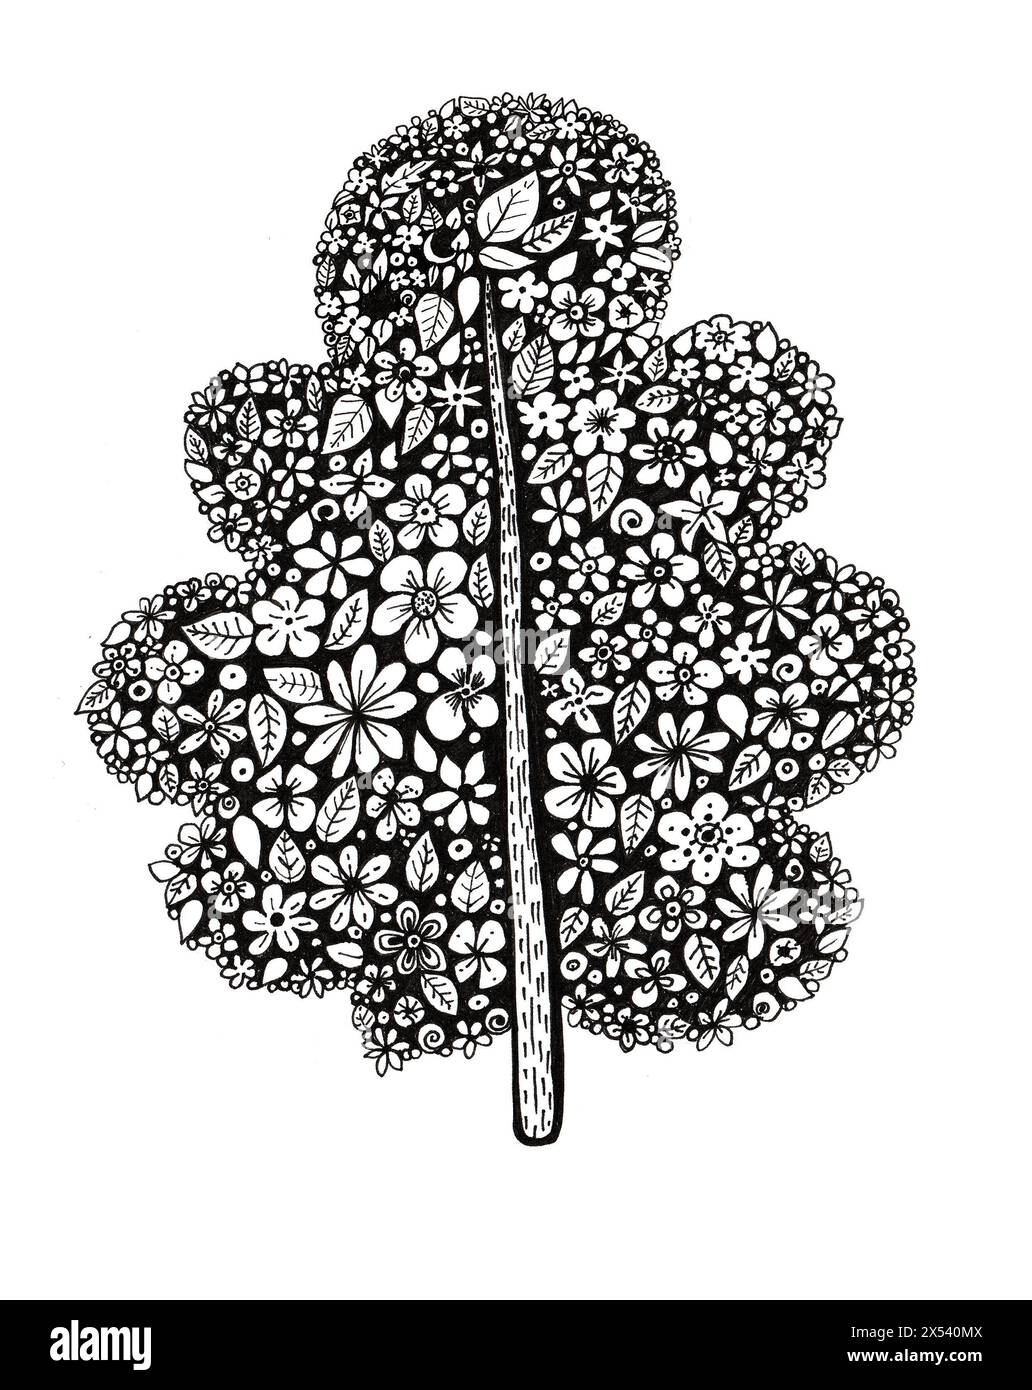 Illustration stylisée d'un arbre noir. Rempli de fleurs et de feuilles blanches. Tronc droit. Fleurs, feuilles de différentes formes et tailles. Doodle. Est Banque D'Images